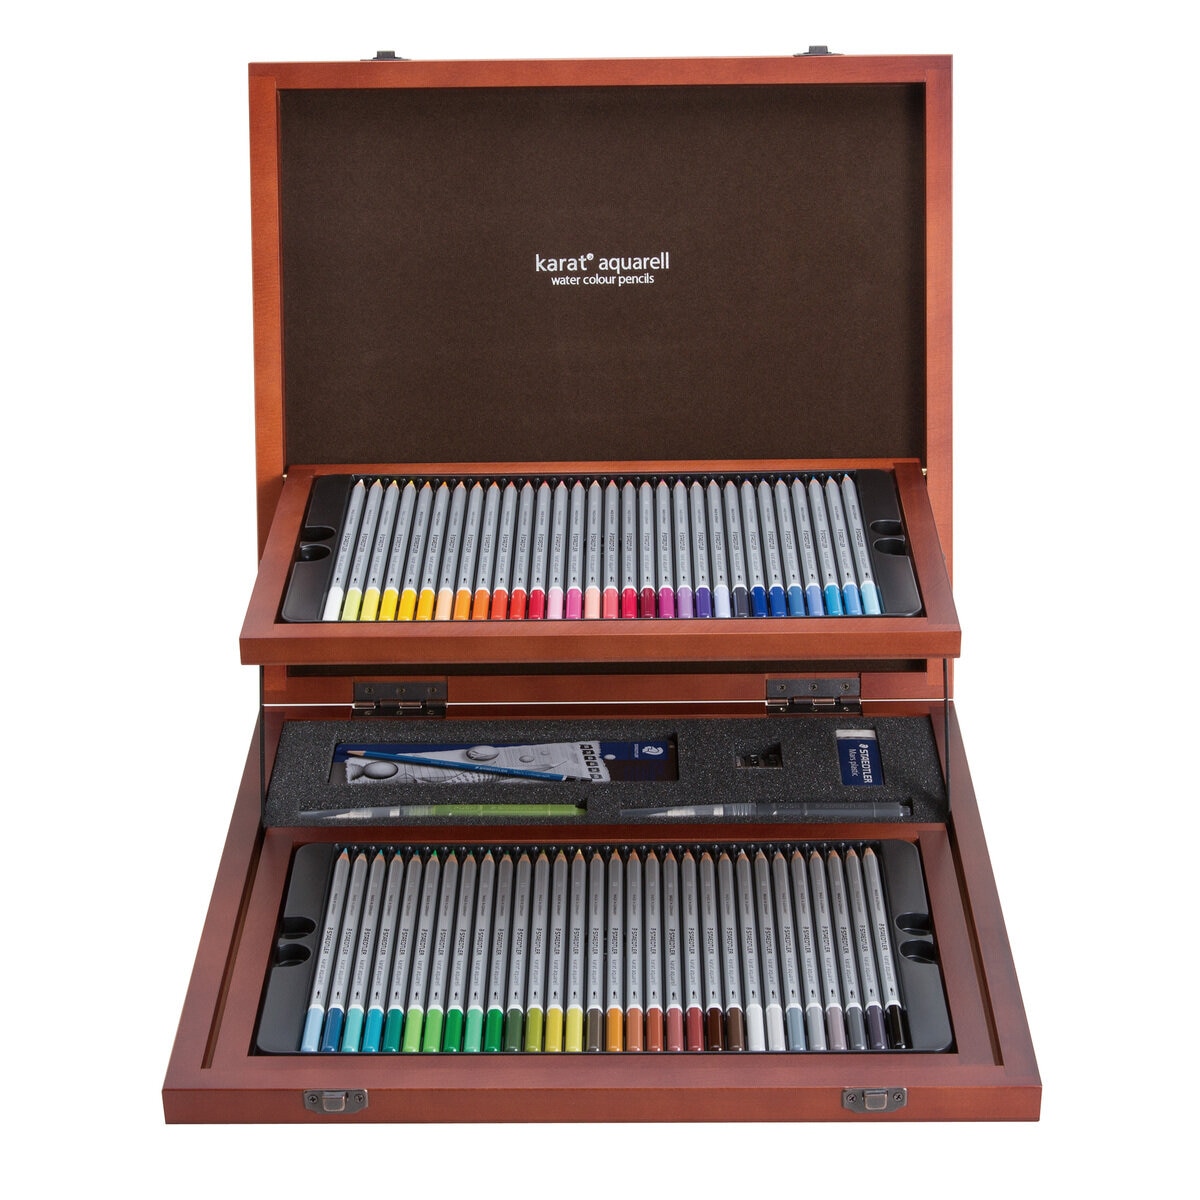 ステッドラー カラト アクェレル水彩色鉛筆 60色 クリエイティブボックス